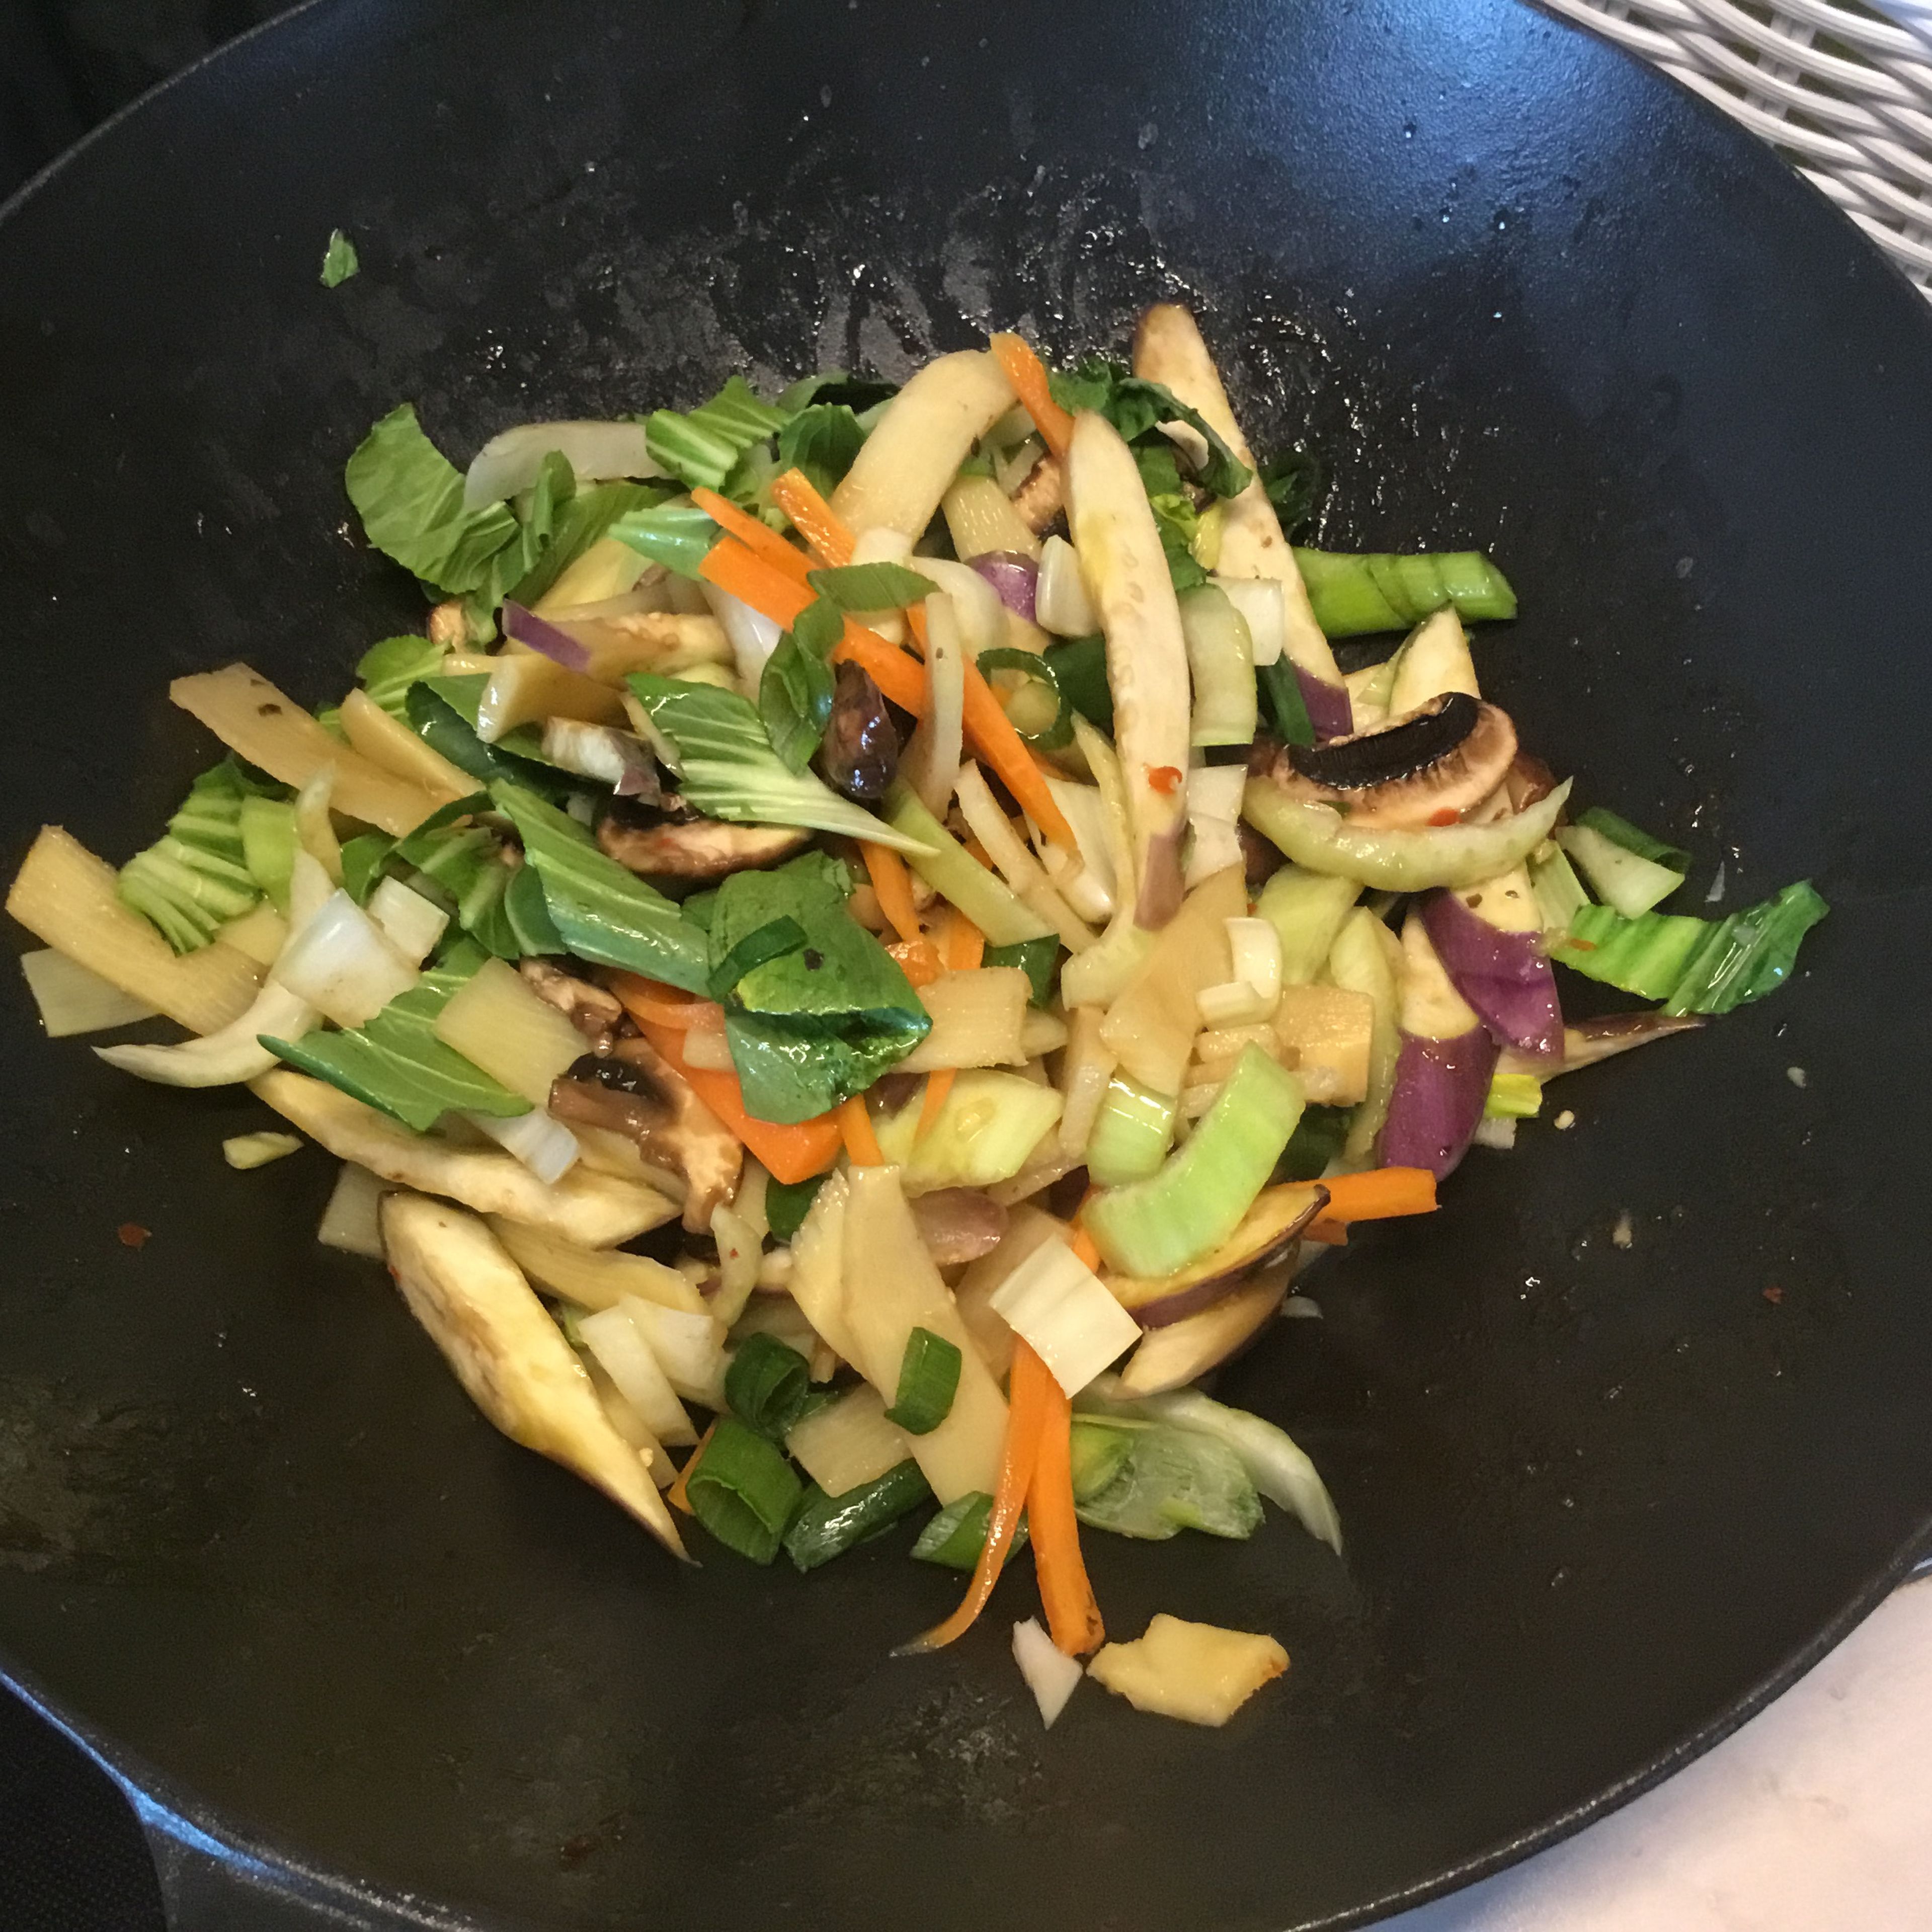 Das Chinagemüse im selben Wok zubereiten. Etwas Sesamöl erhitzen und erst die etwas länger dauernden Gemüseanteile ( hier Karotten und Stielanteile Pak Choi) kurz erhitzen. Danach das Restgemüse hinzufügen.